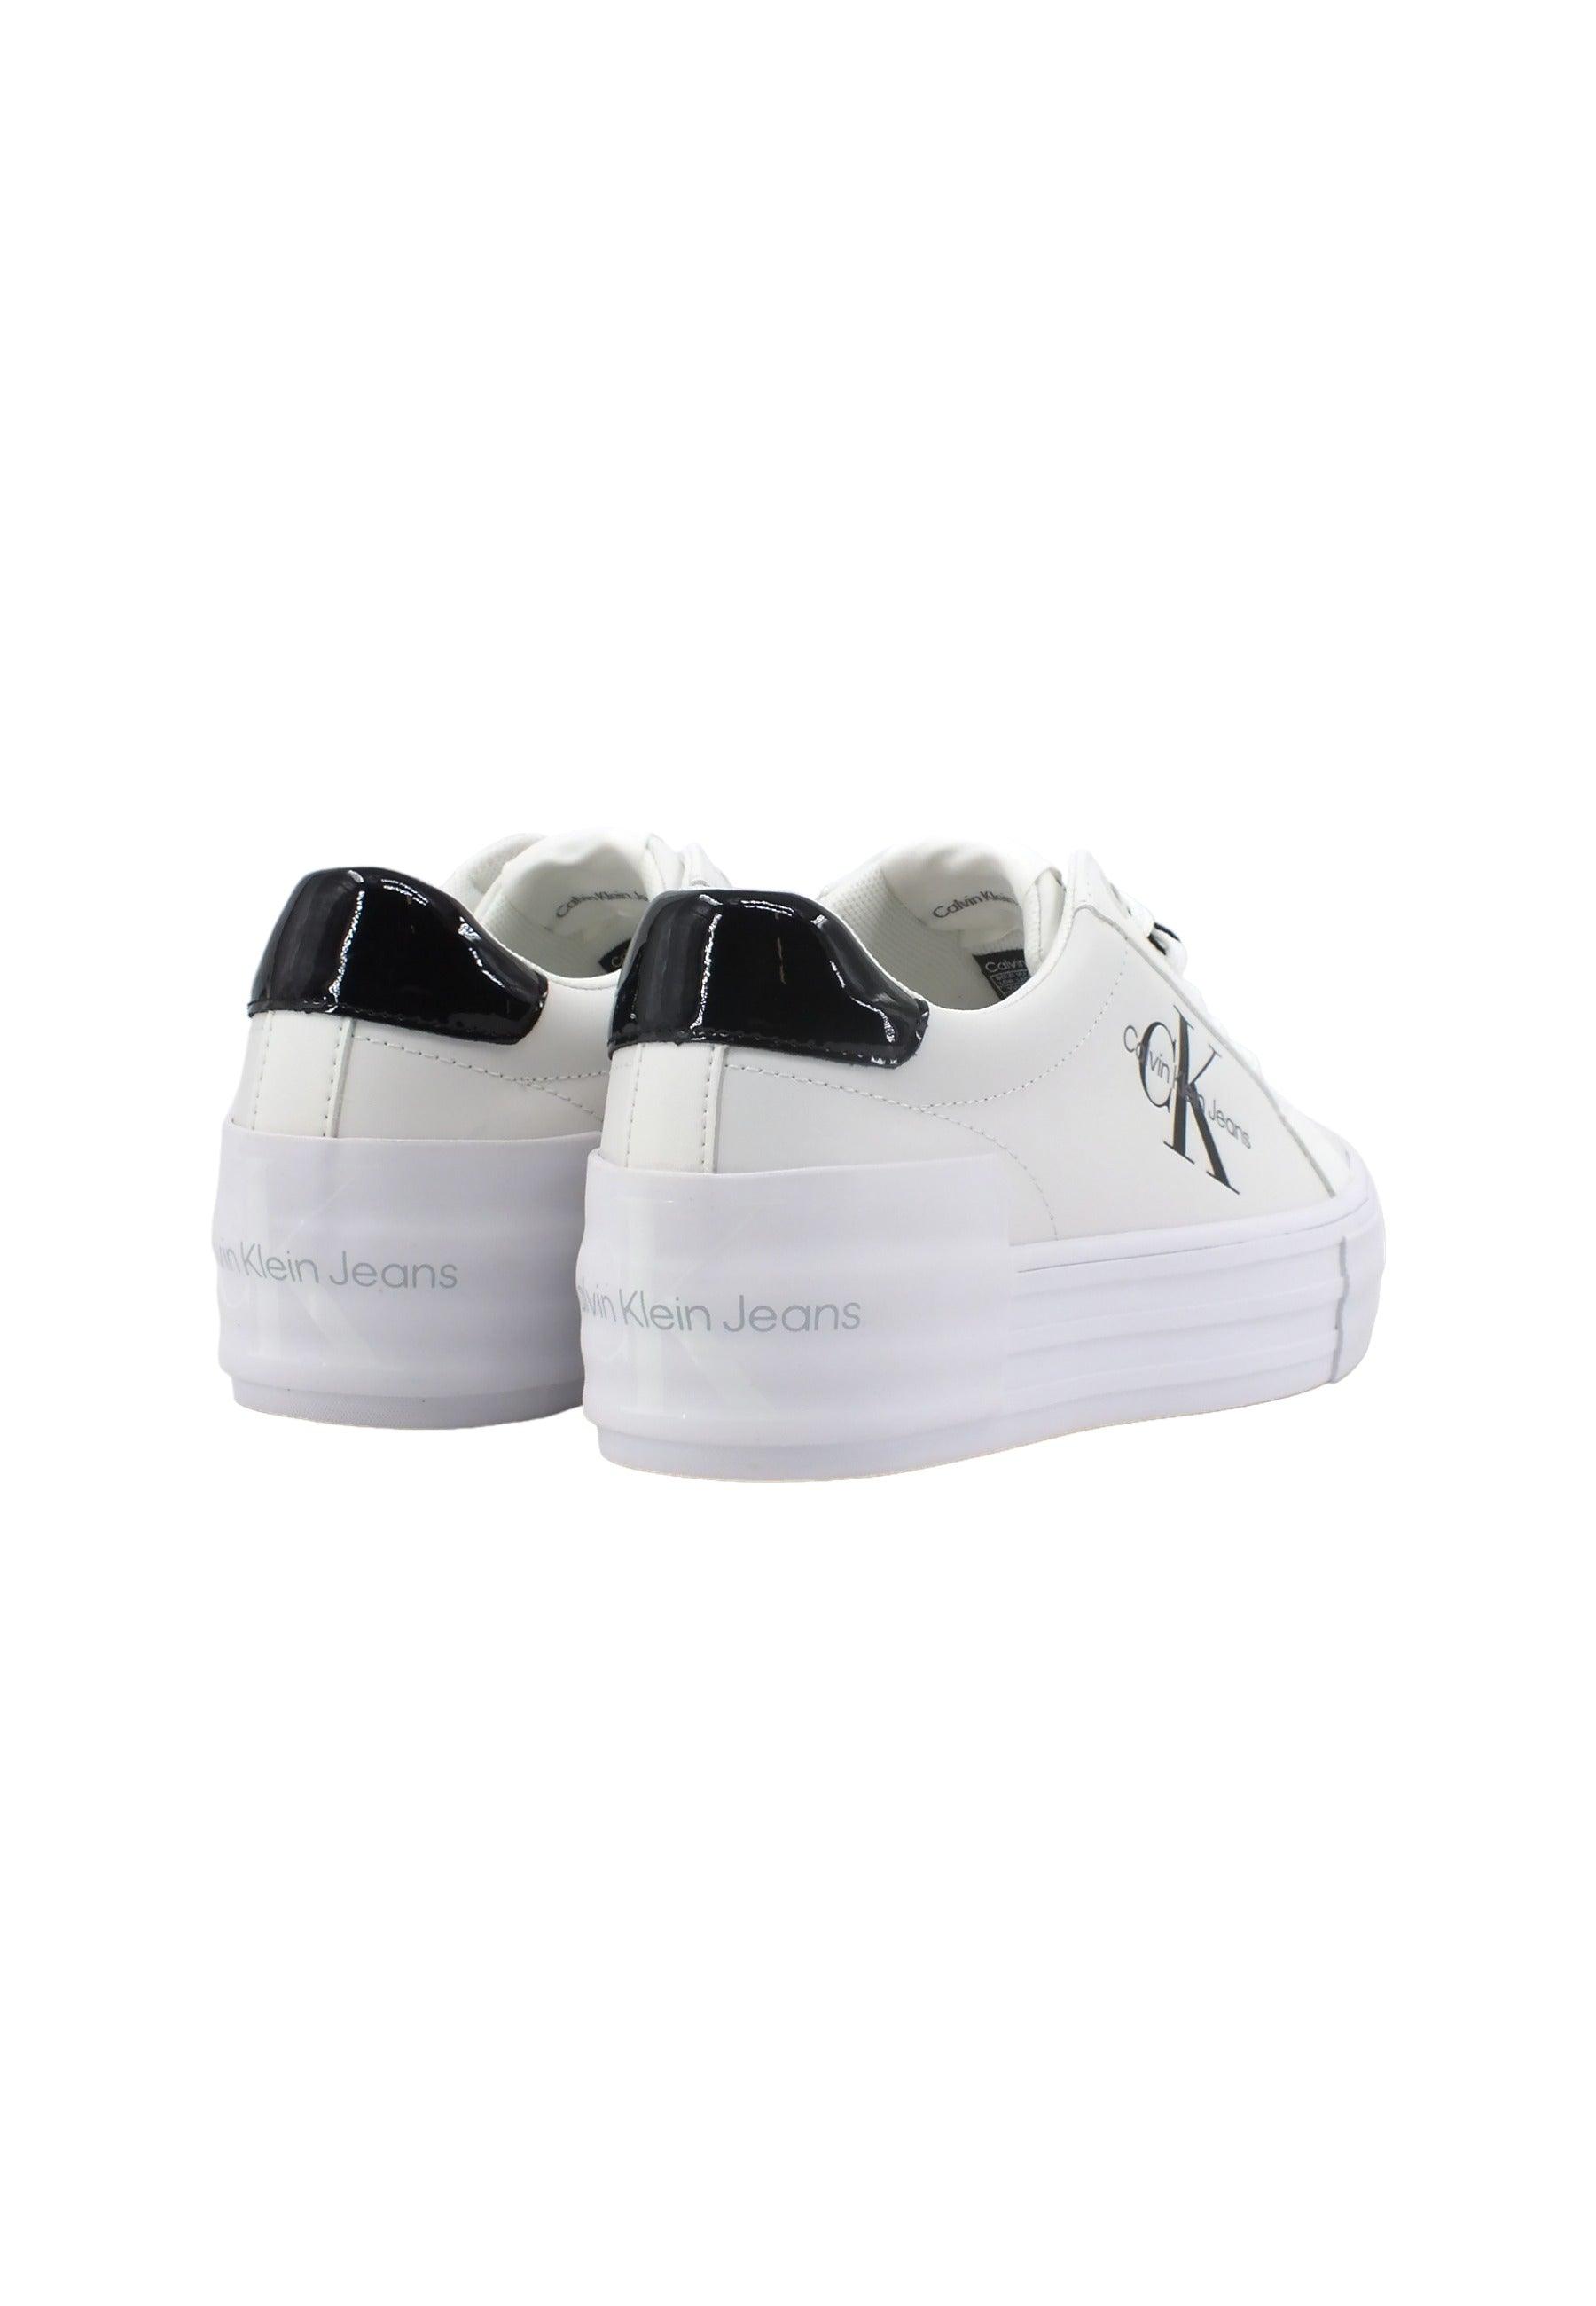 CALVIN KLEIN Sneaker Donna Bright White Black YW0YW01294 - Sandrini Calzature e Abbigliamento